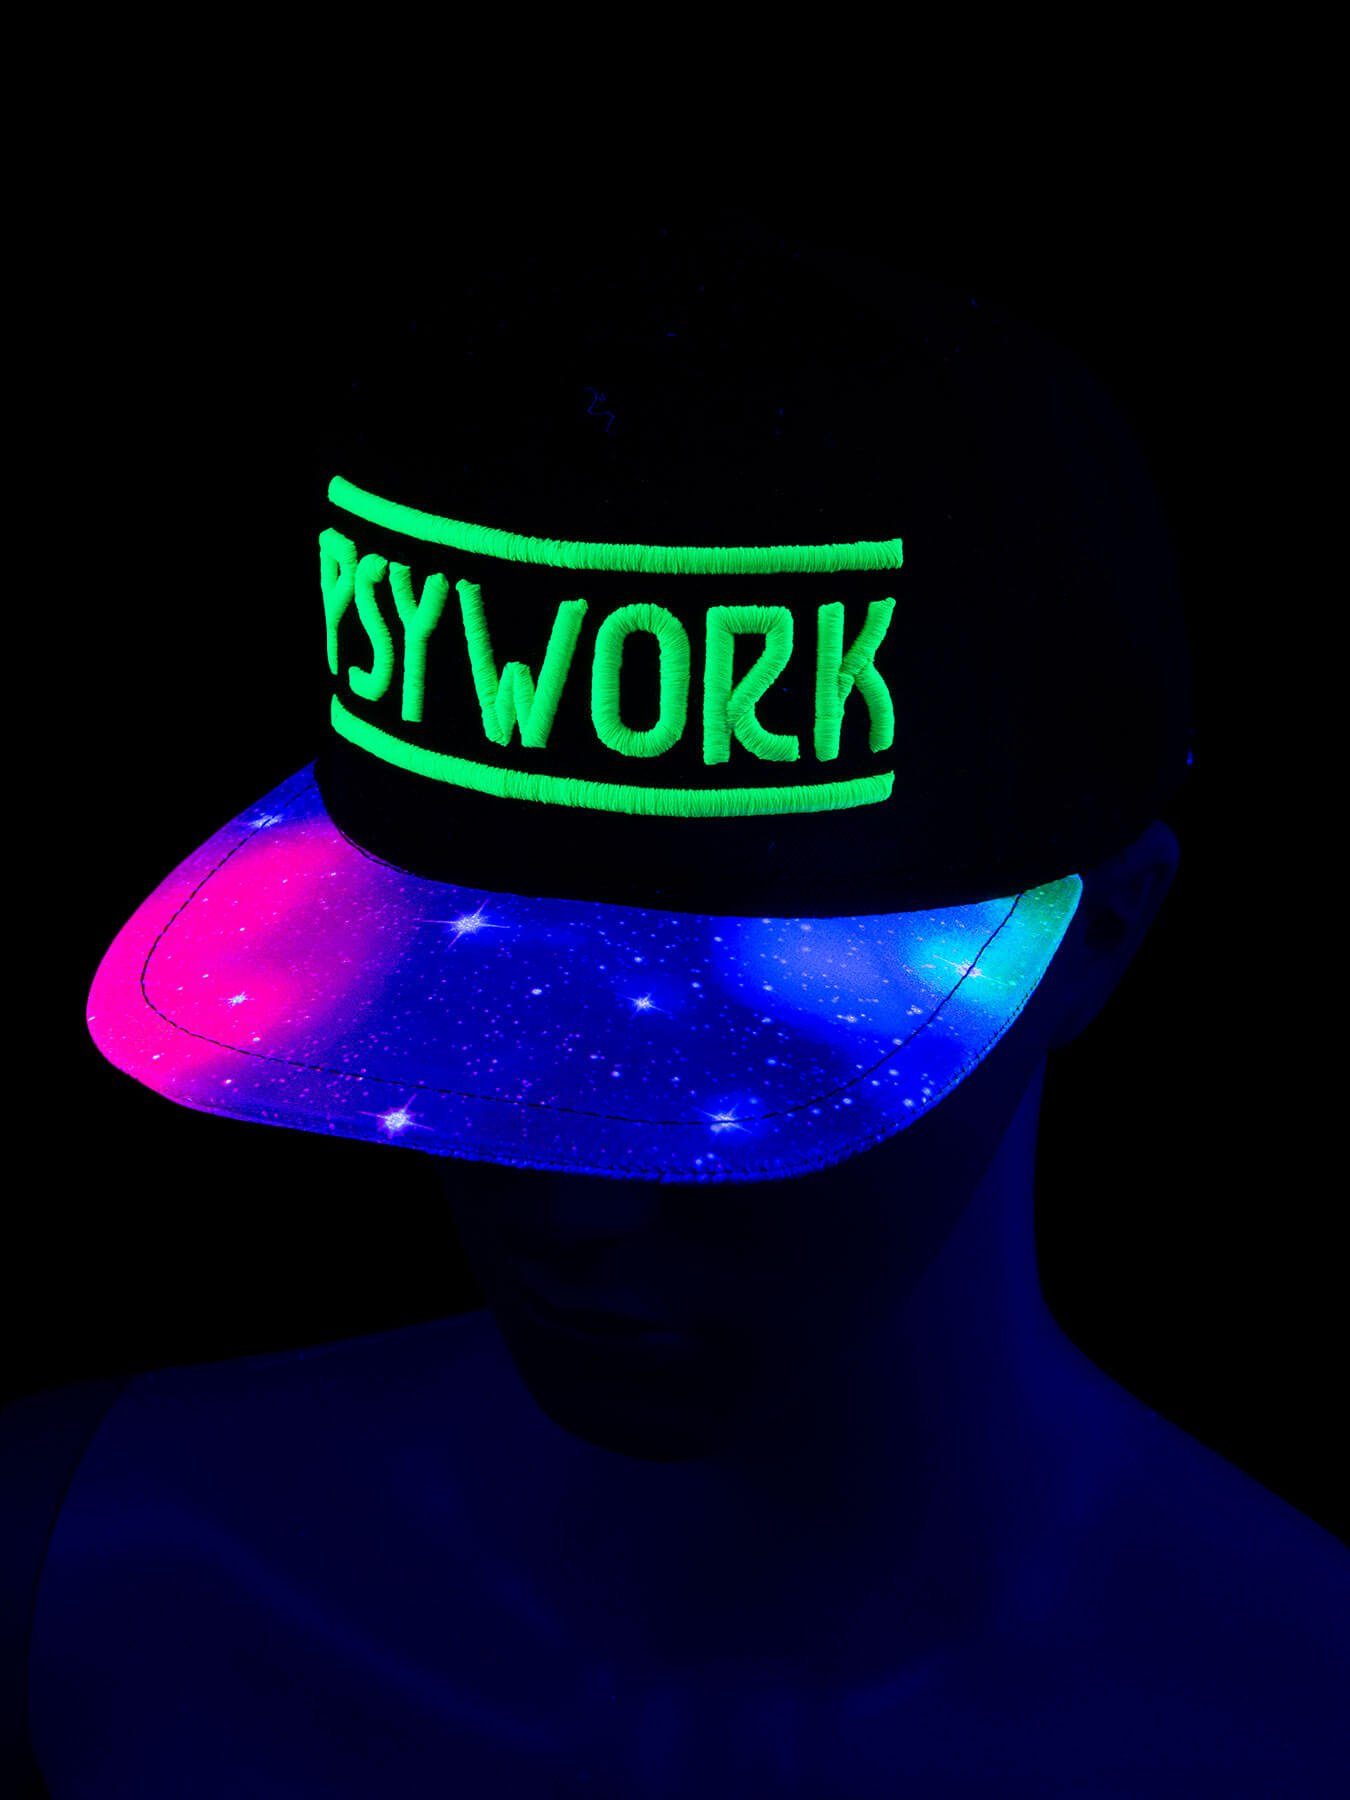 Neon UV-aktiv, PSYWORK leuchtet Universe", Grün unter Cap Cap Black Snapback Schwarzlicht Schwarzlicht "Psychedelic